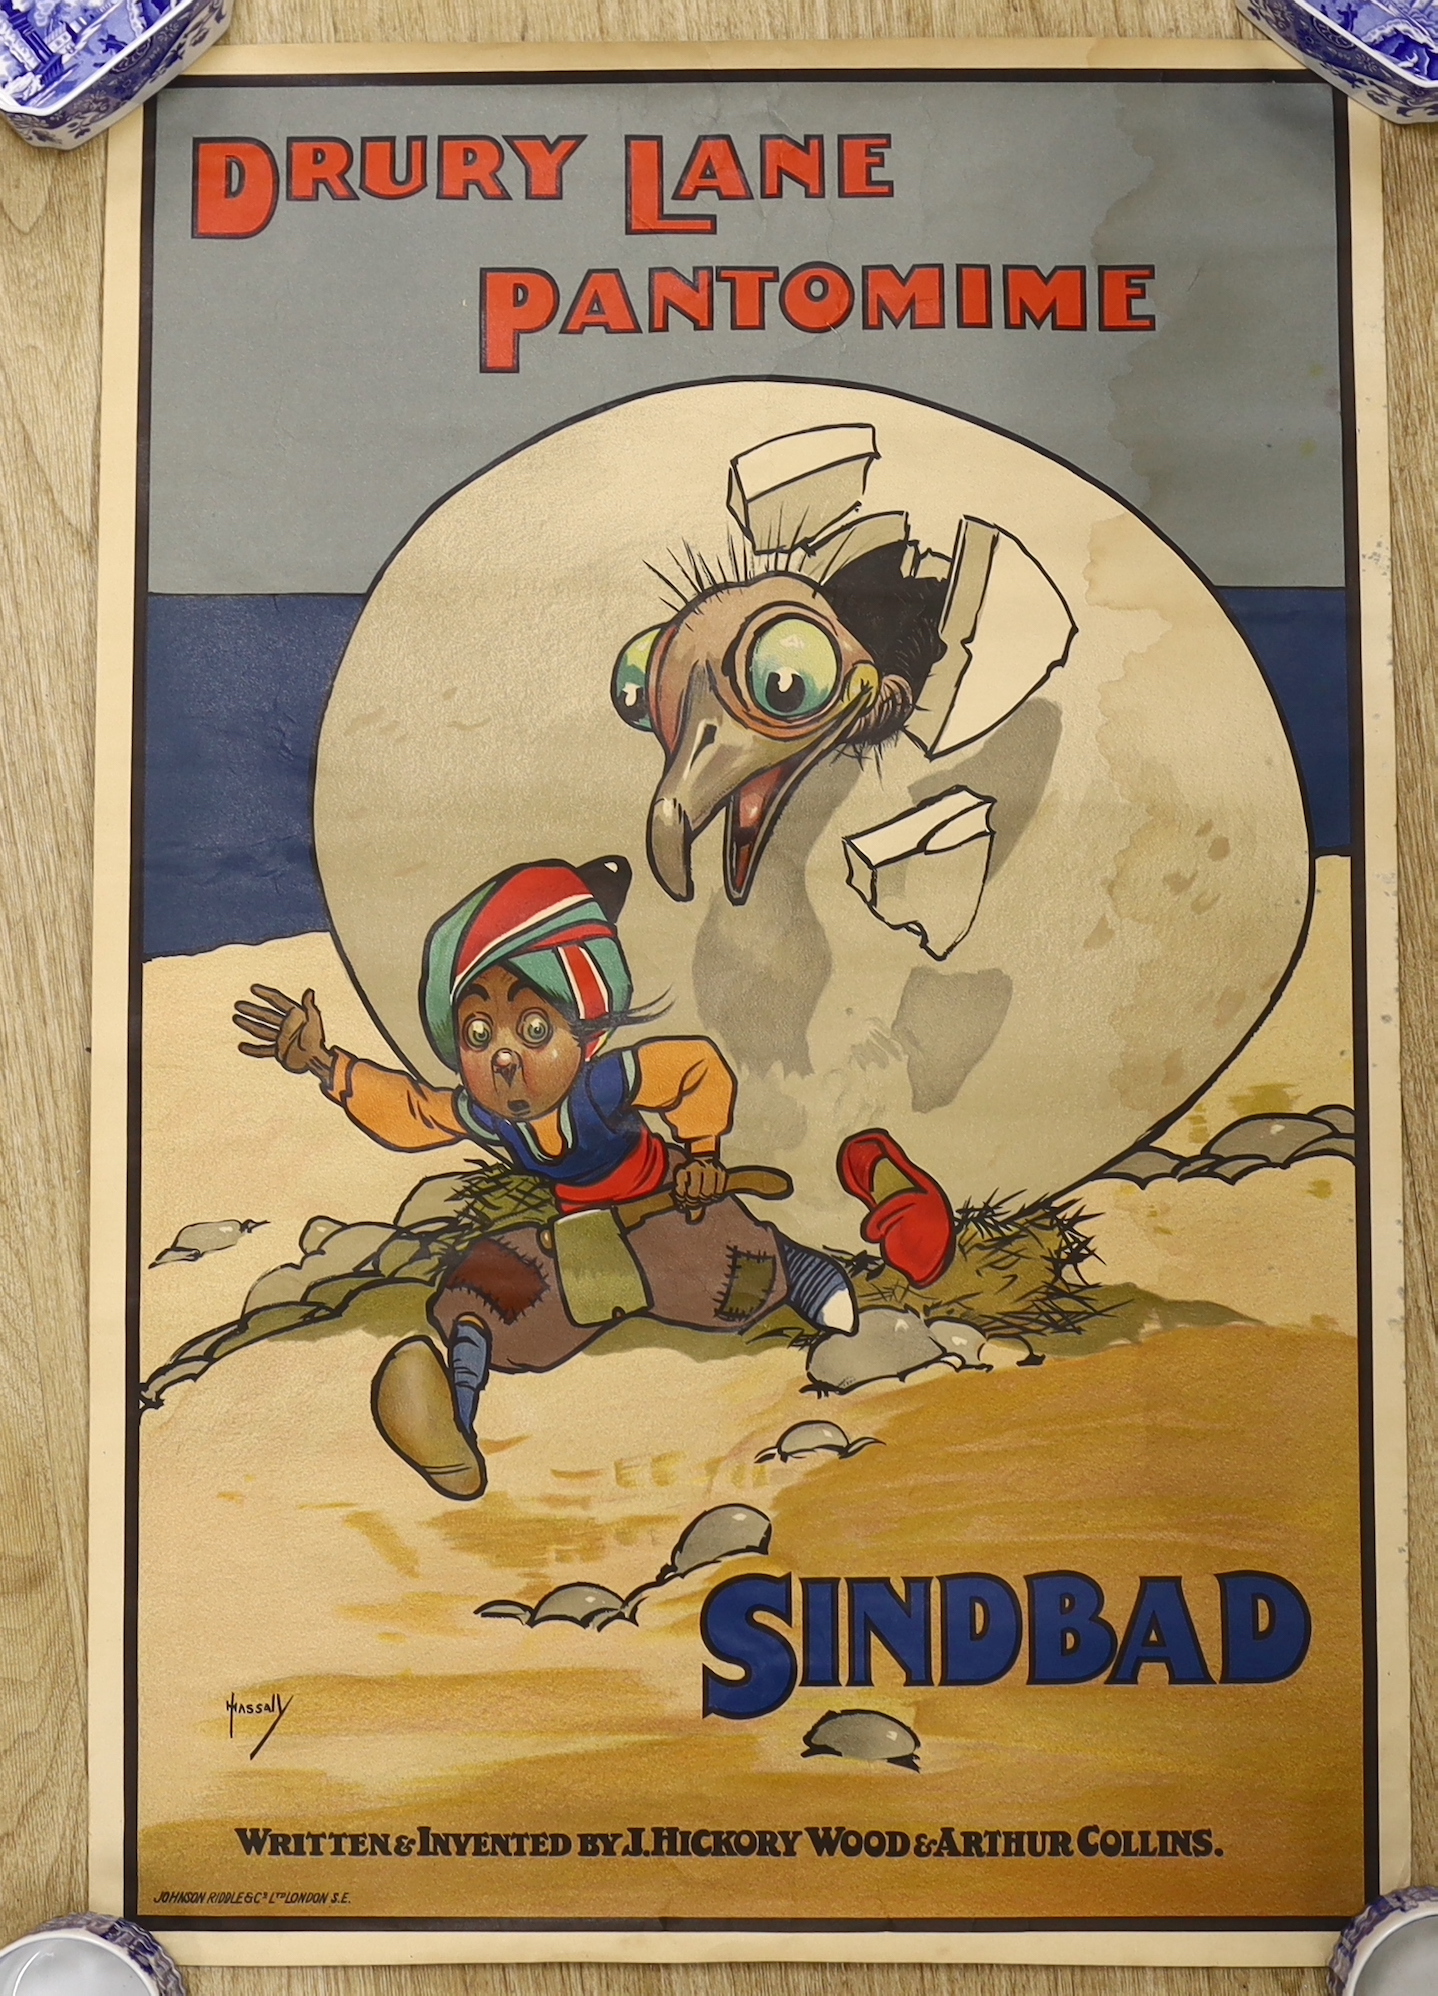 A Drury Lane Sinbad pantomime poster, 75 x 51cm